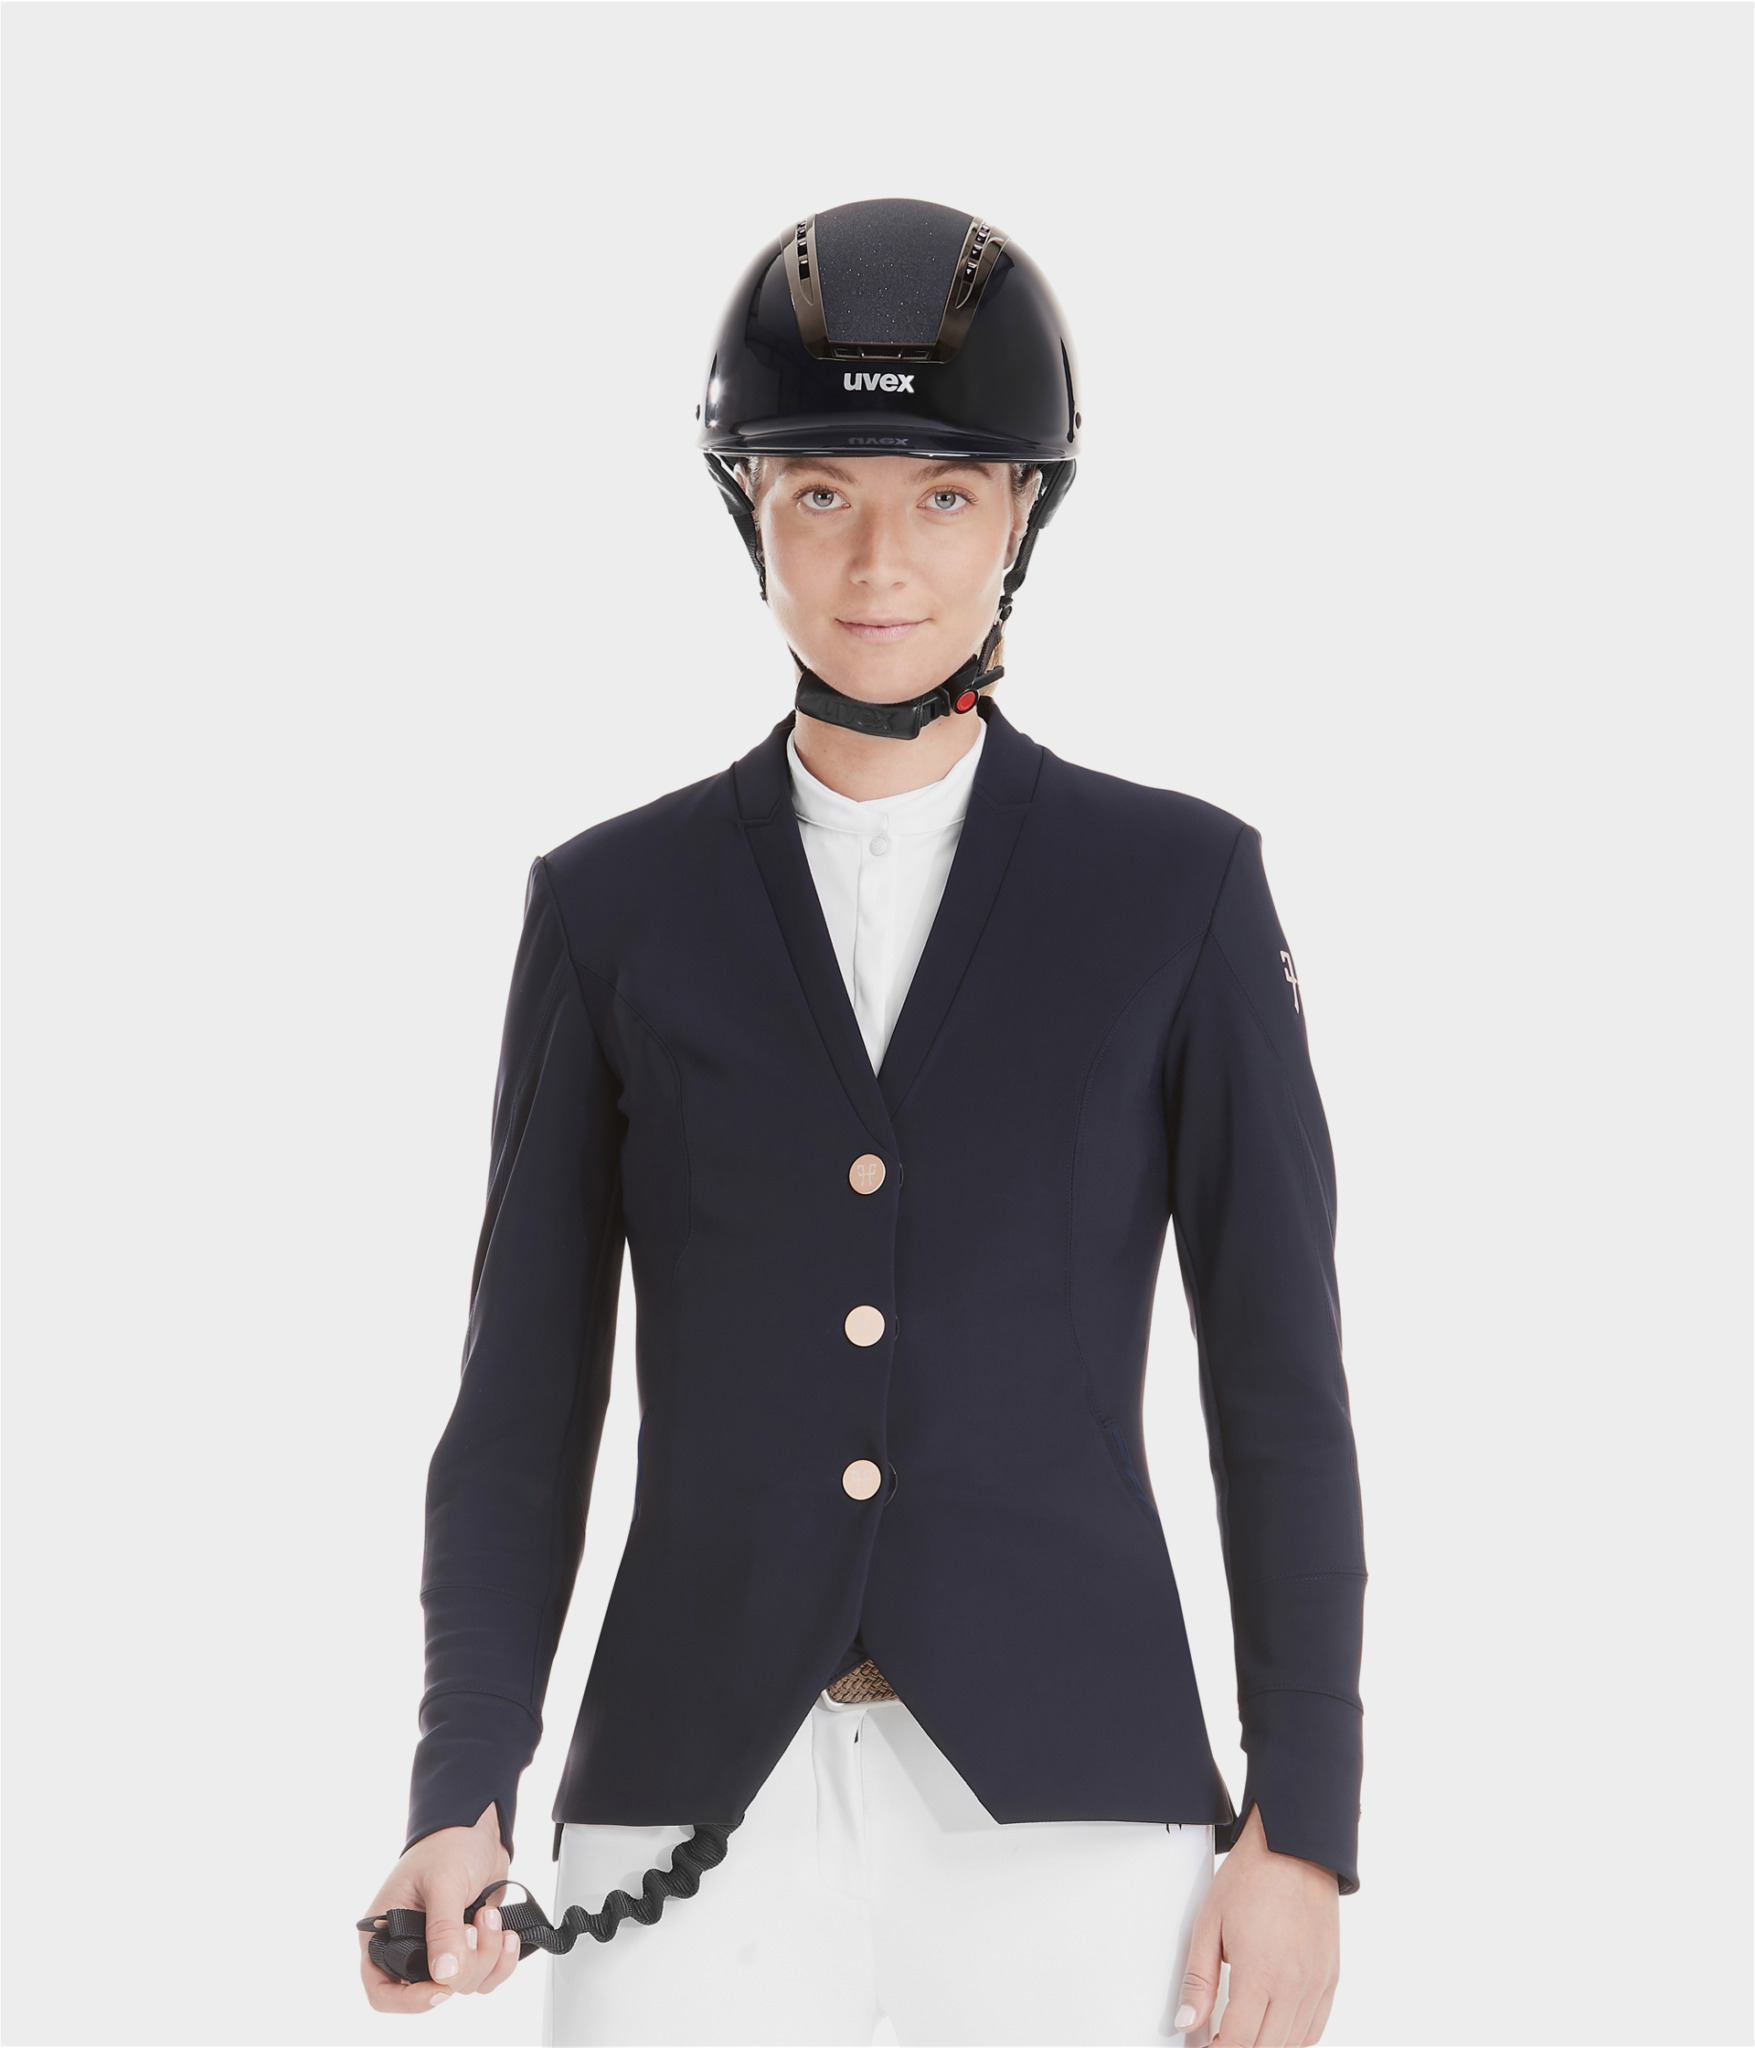 veste de concours d'équitation femme horse pilot modèle aerotech couleur darknight bleu marine